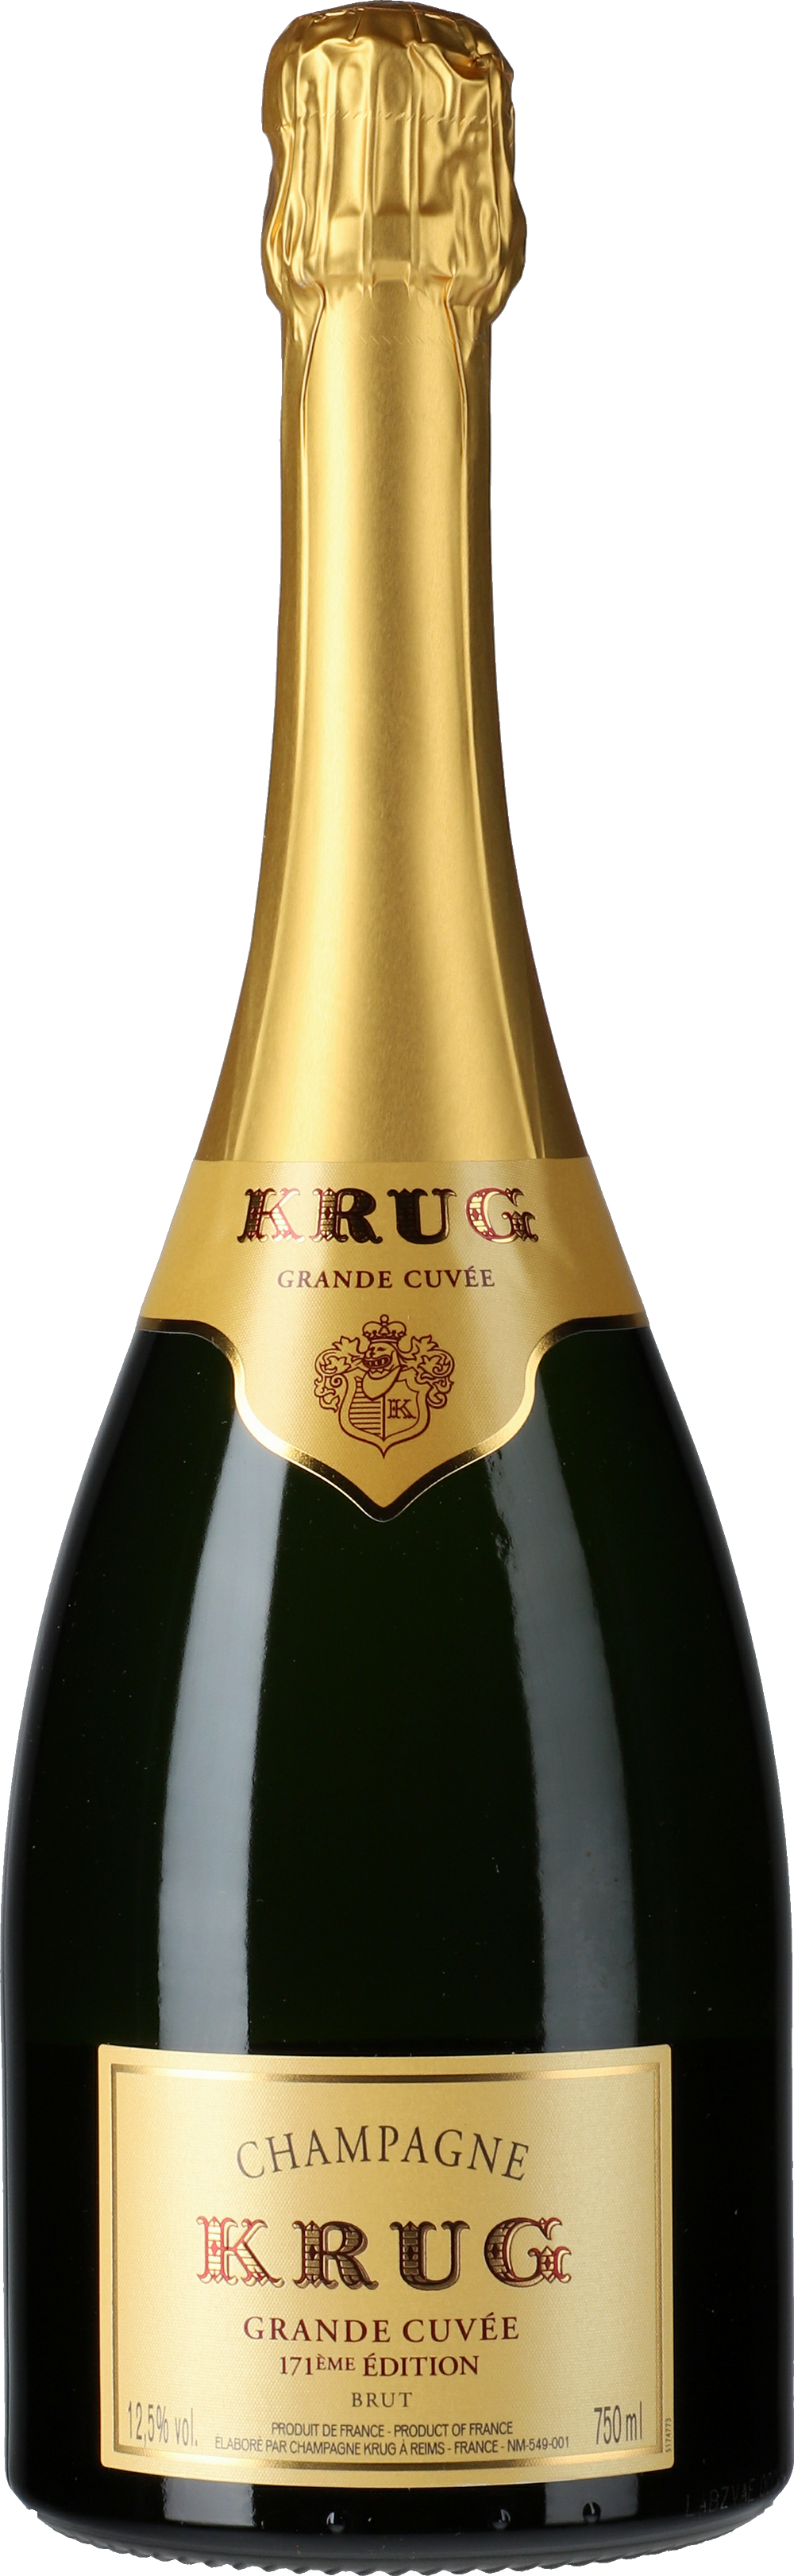 Édition - Grande Cuvée Lobenbergs 171 Champagne Gute Brut Weine Krug: